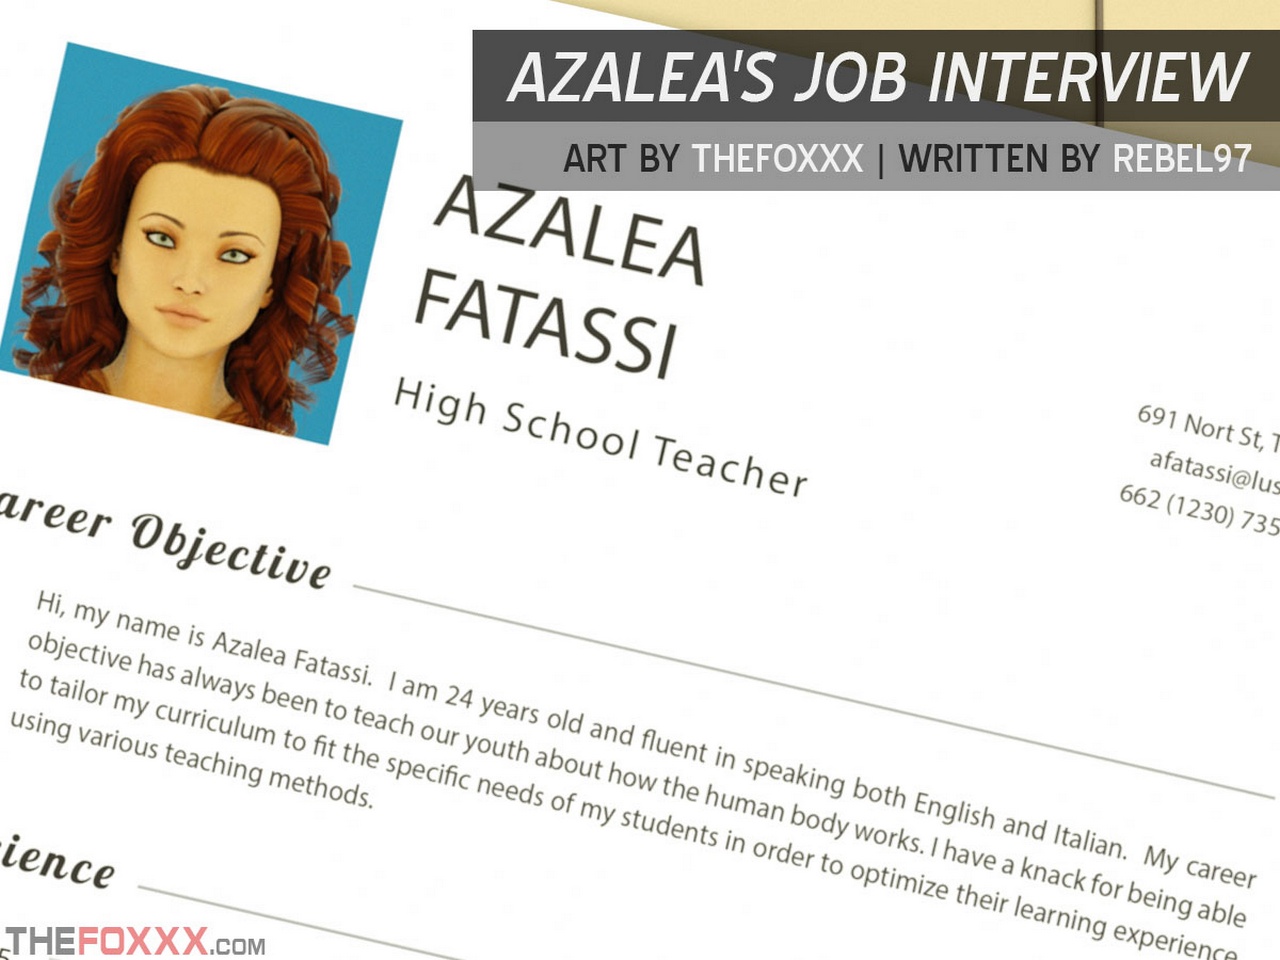 Azalea's Job Interview